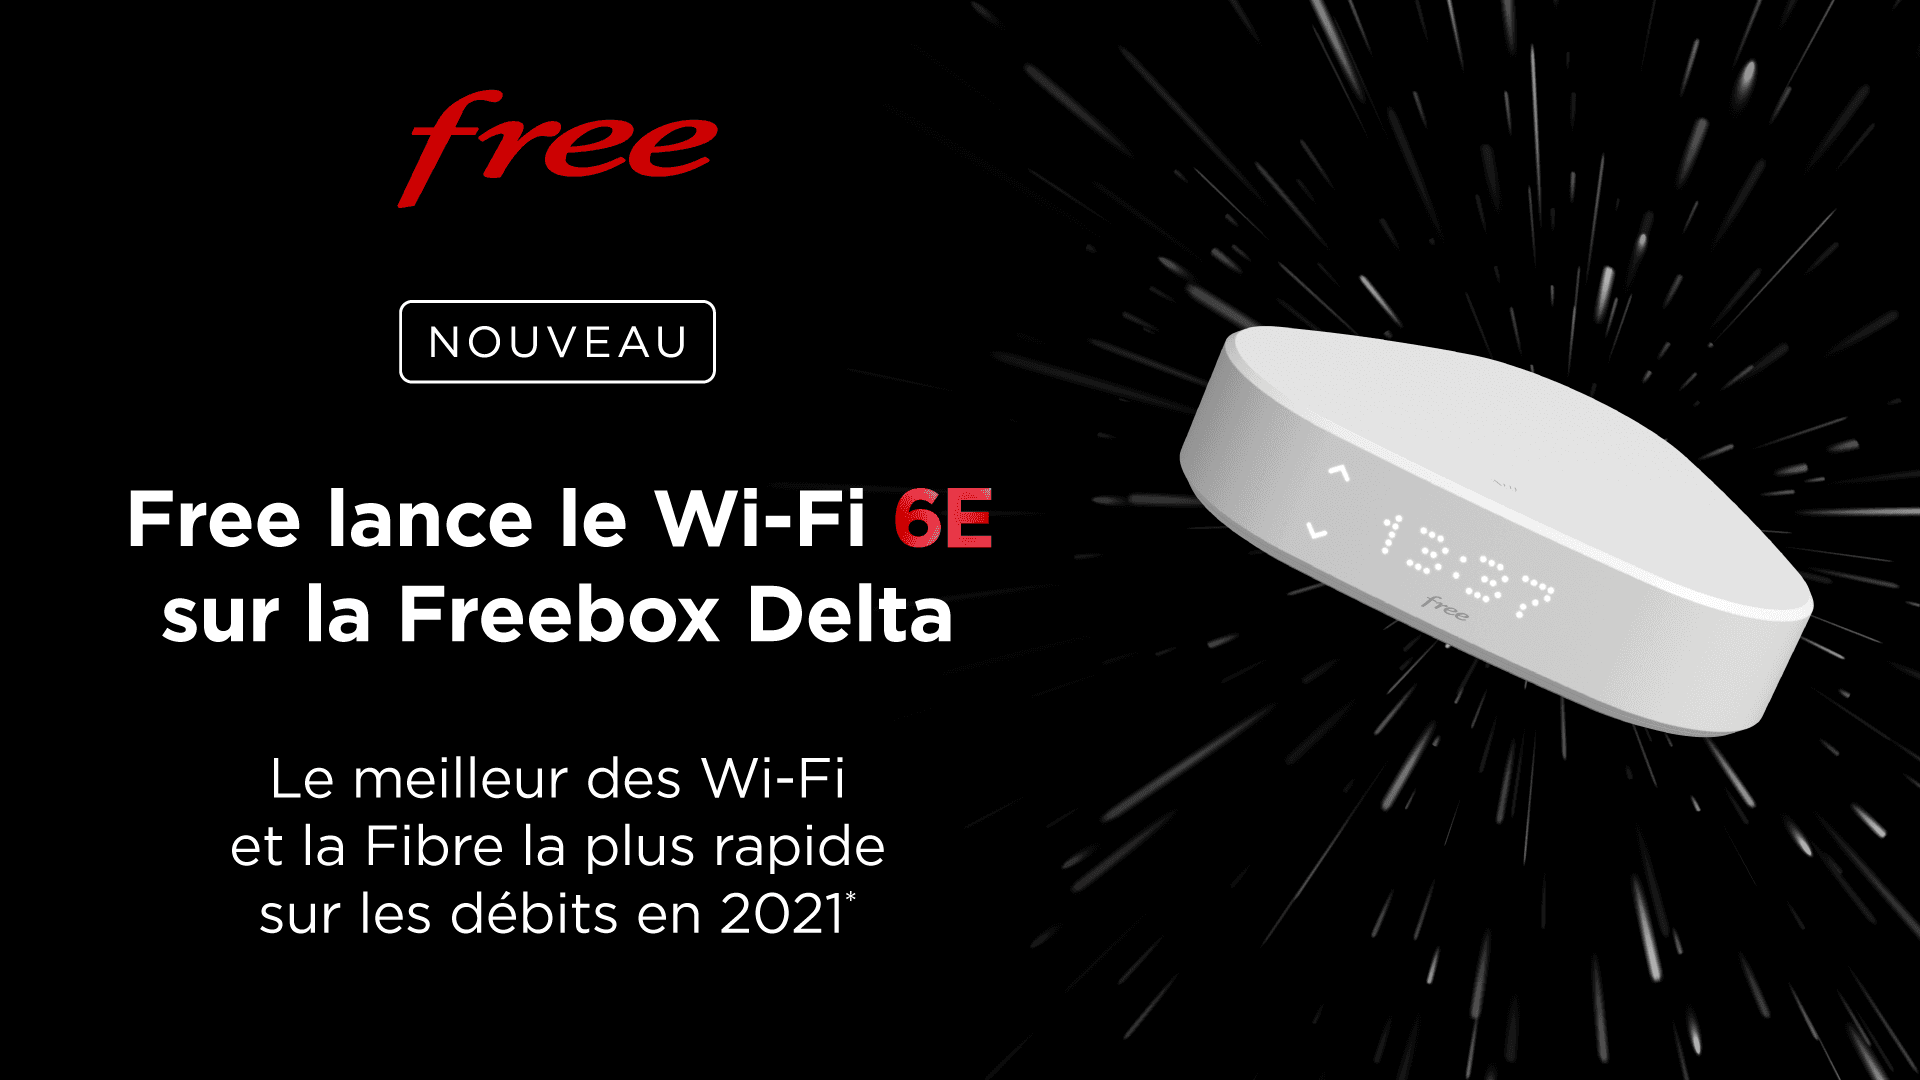 Le Wi-Fi 6E, le meilleur des Wi-Fi, maintenant disponible sur la Freebox Delta